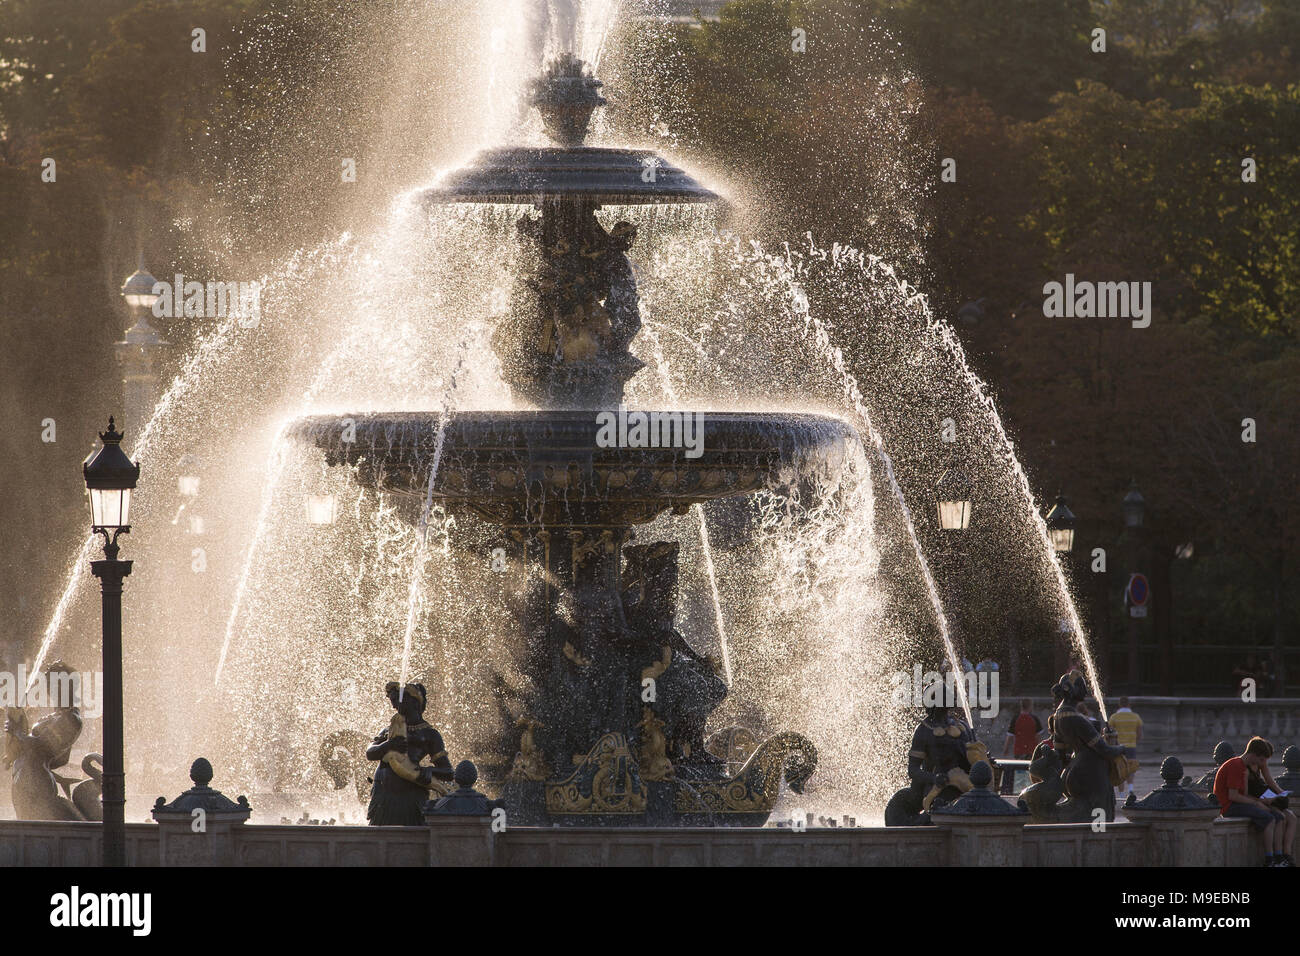 Fountain of the Seas (Fontaine des Mers), Place de la Concorde, Paris, France Stock Photo